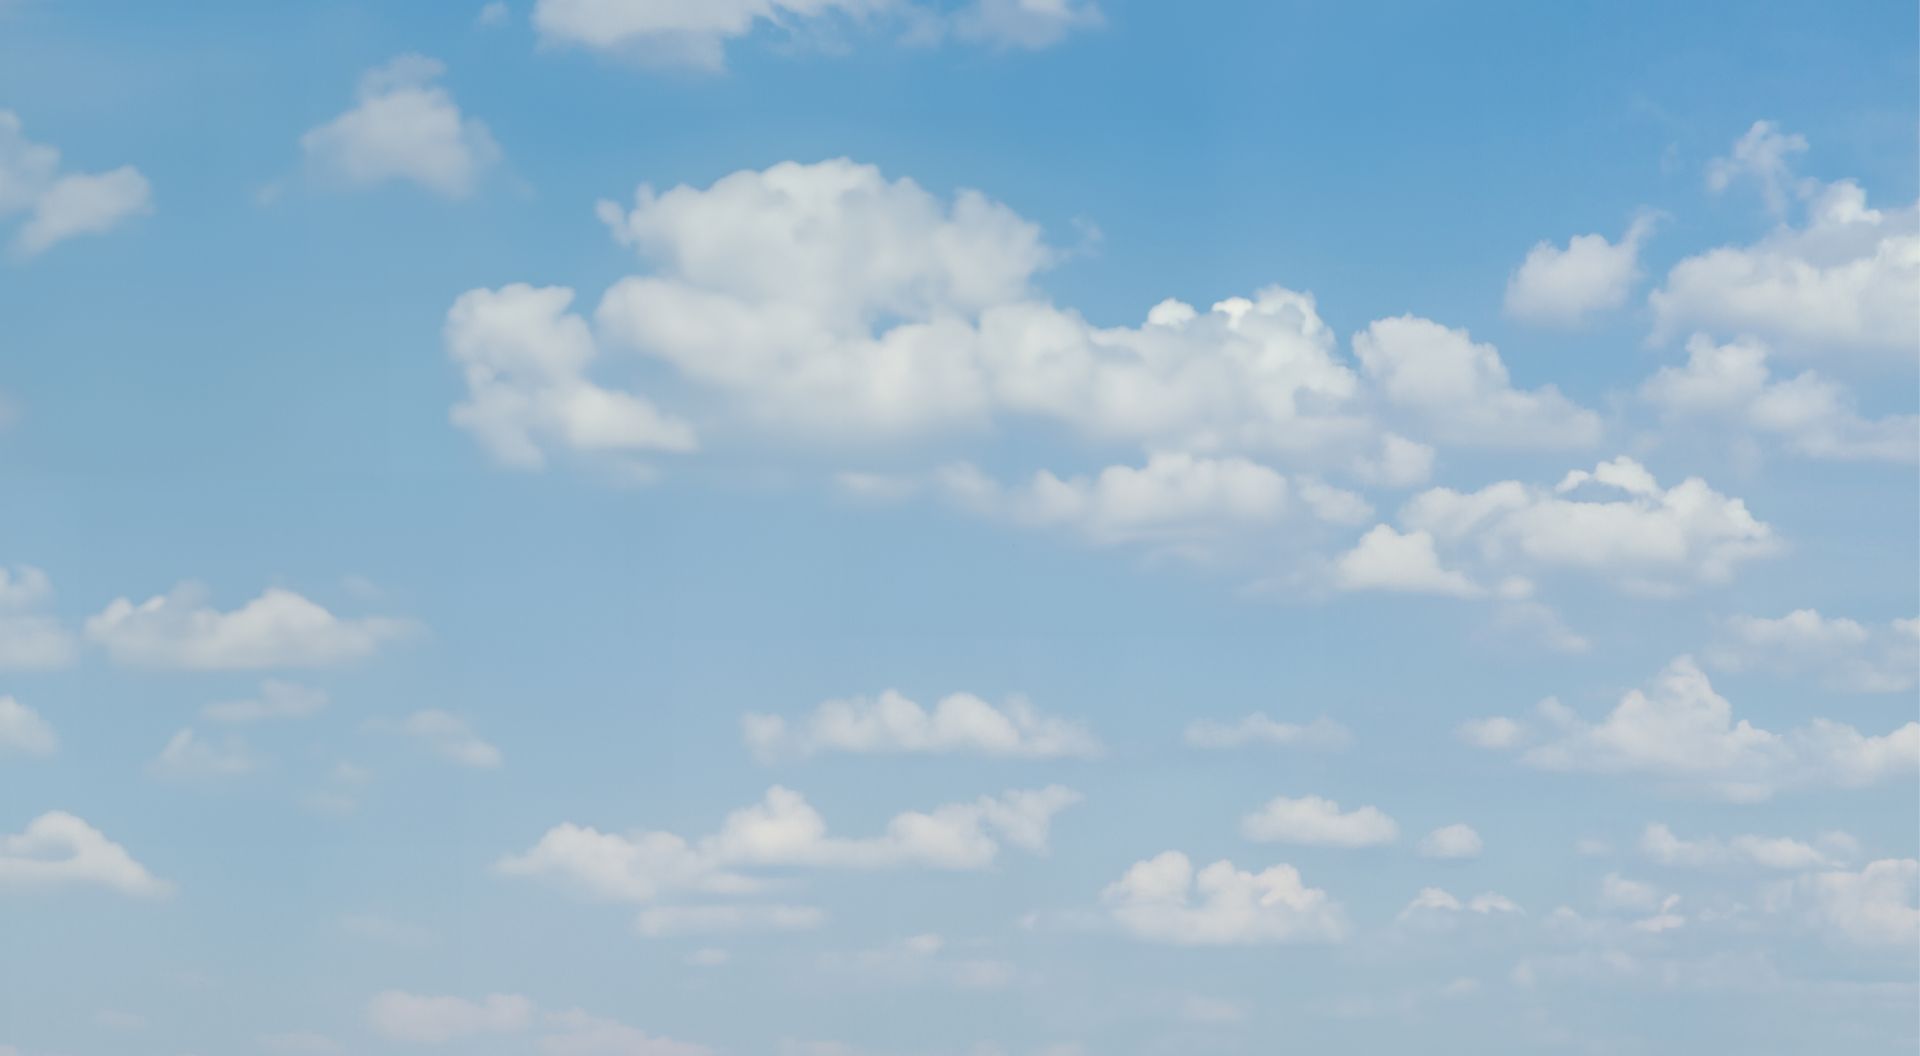 elriwa M4-H55-H - Hintergrundplatte aus PVC-Hartschaum 'Himmel mit Wolken', Höhe 55 cm, Bild H